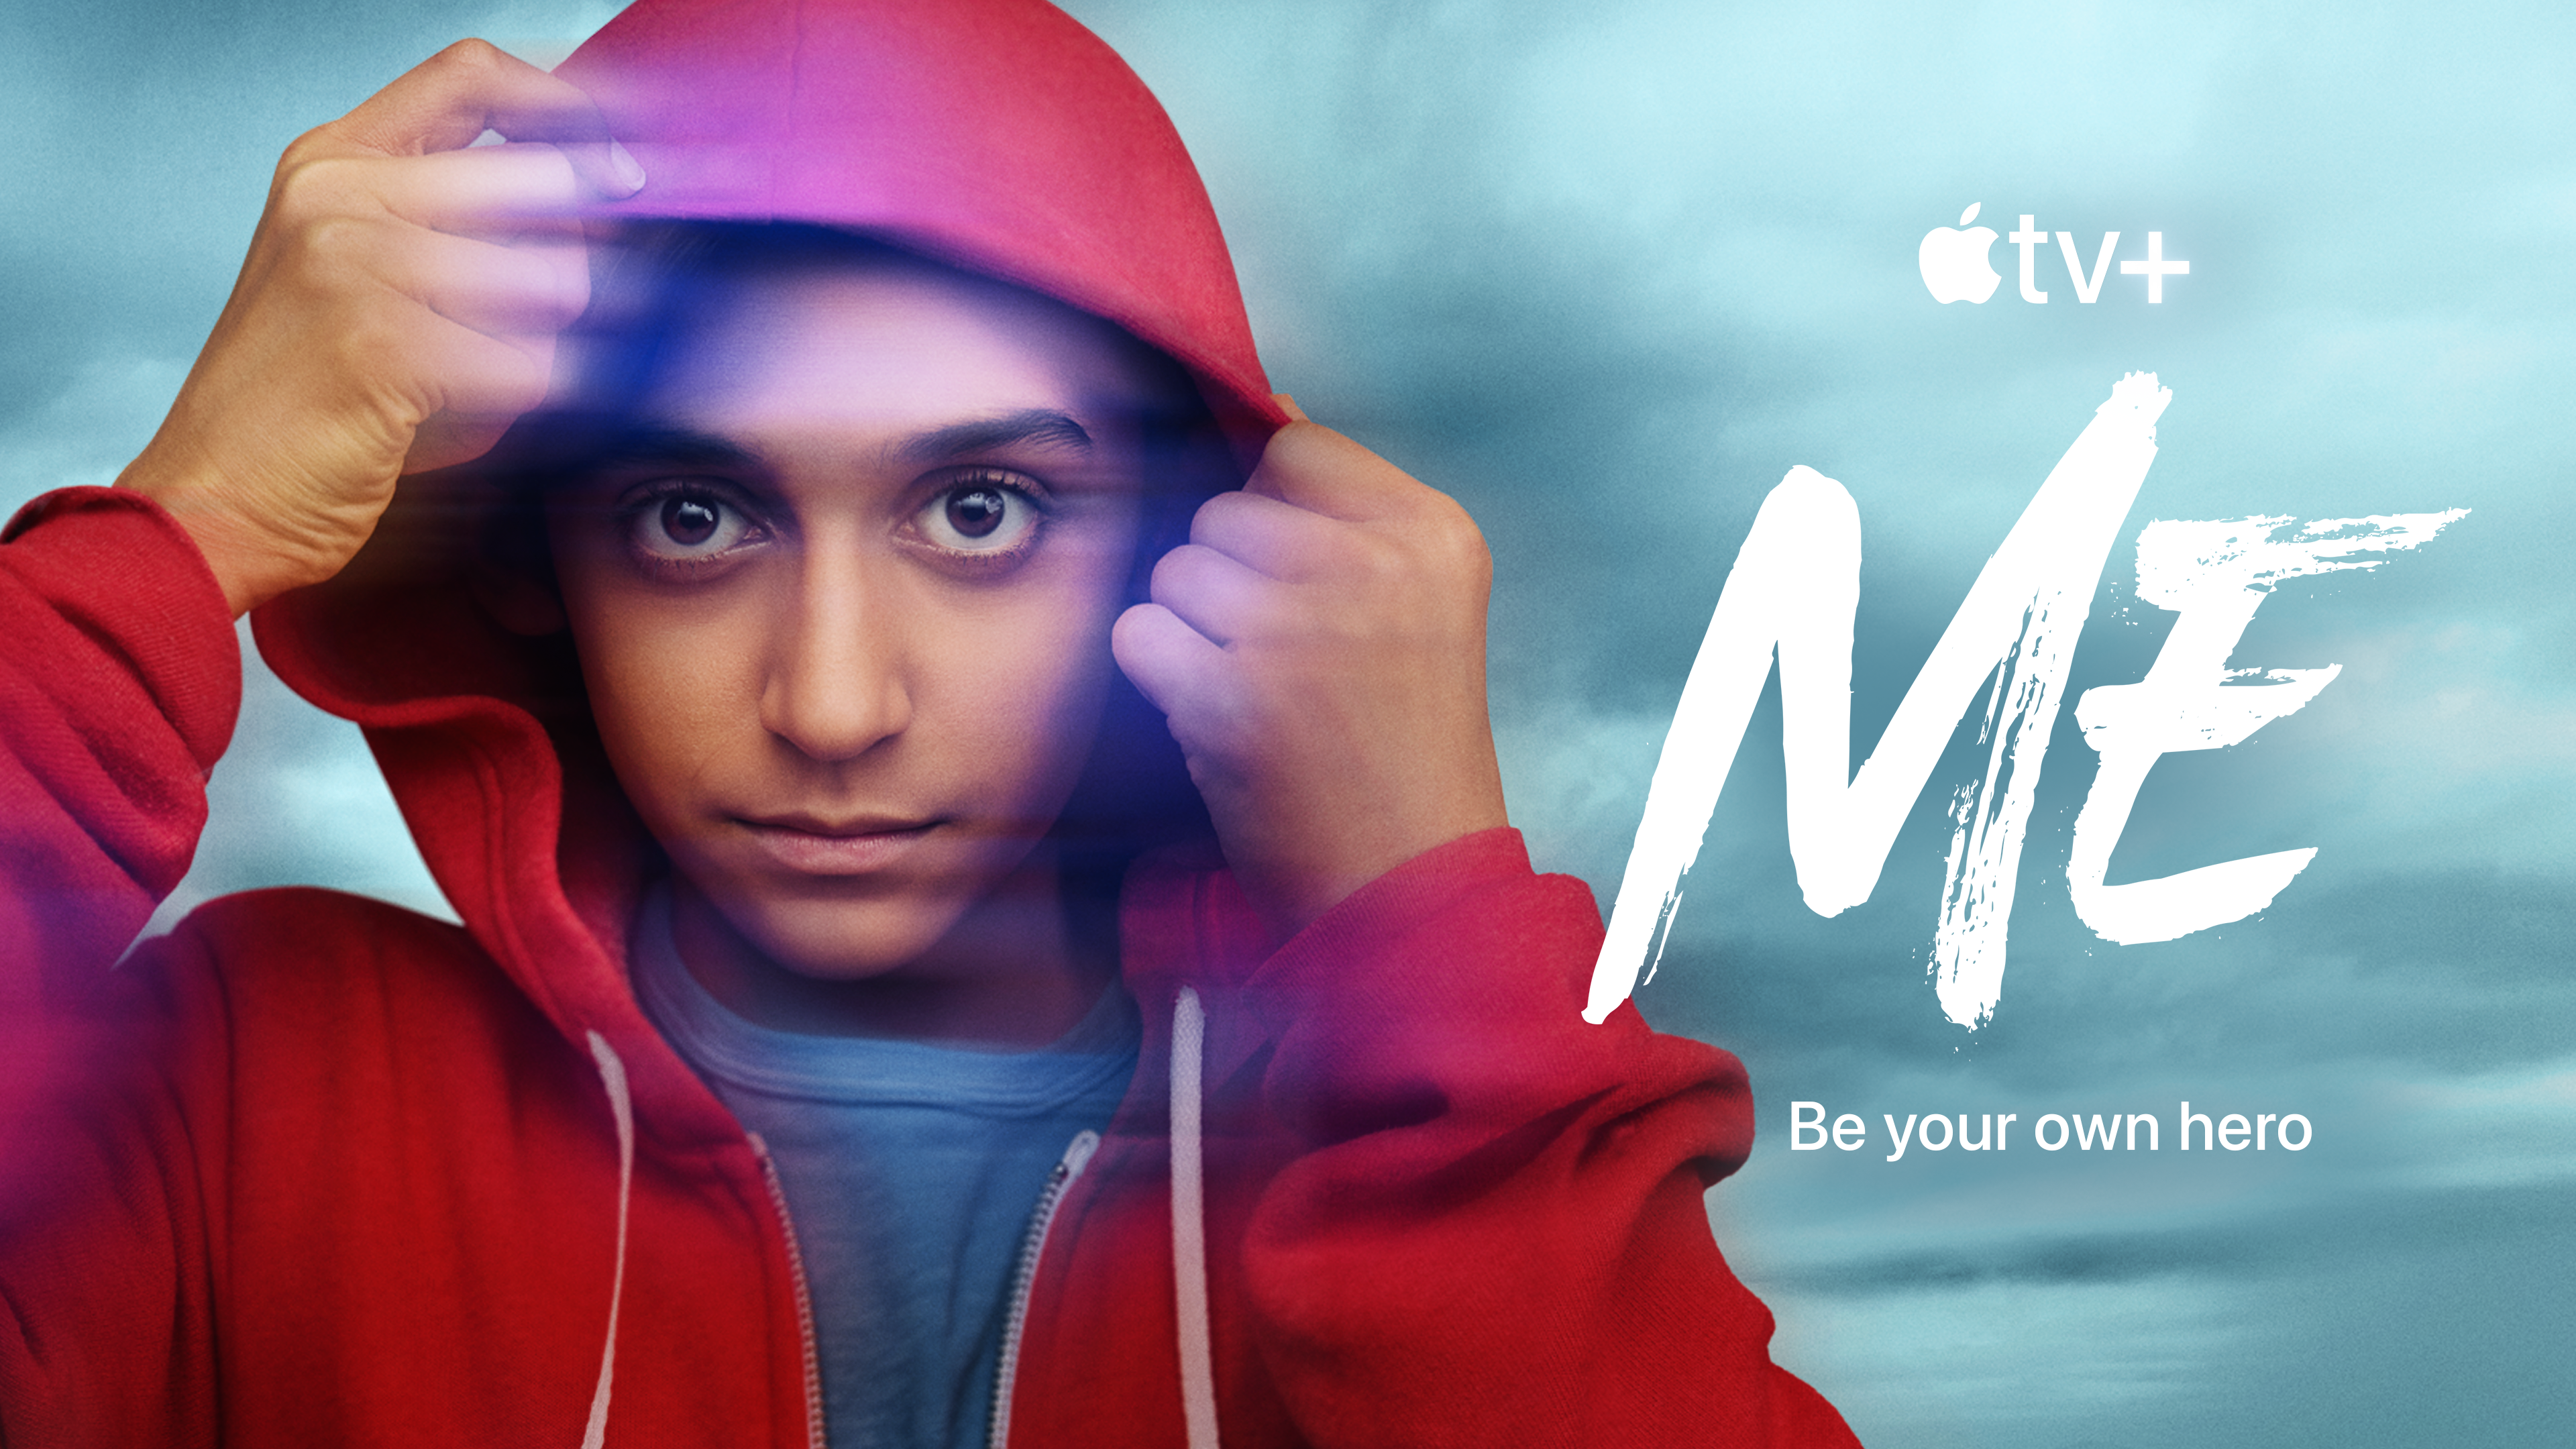 Key art for "Me" on Apple TV+